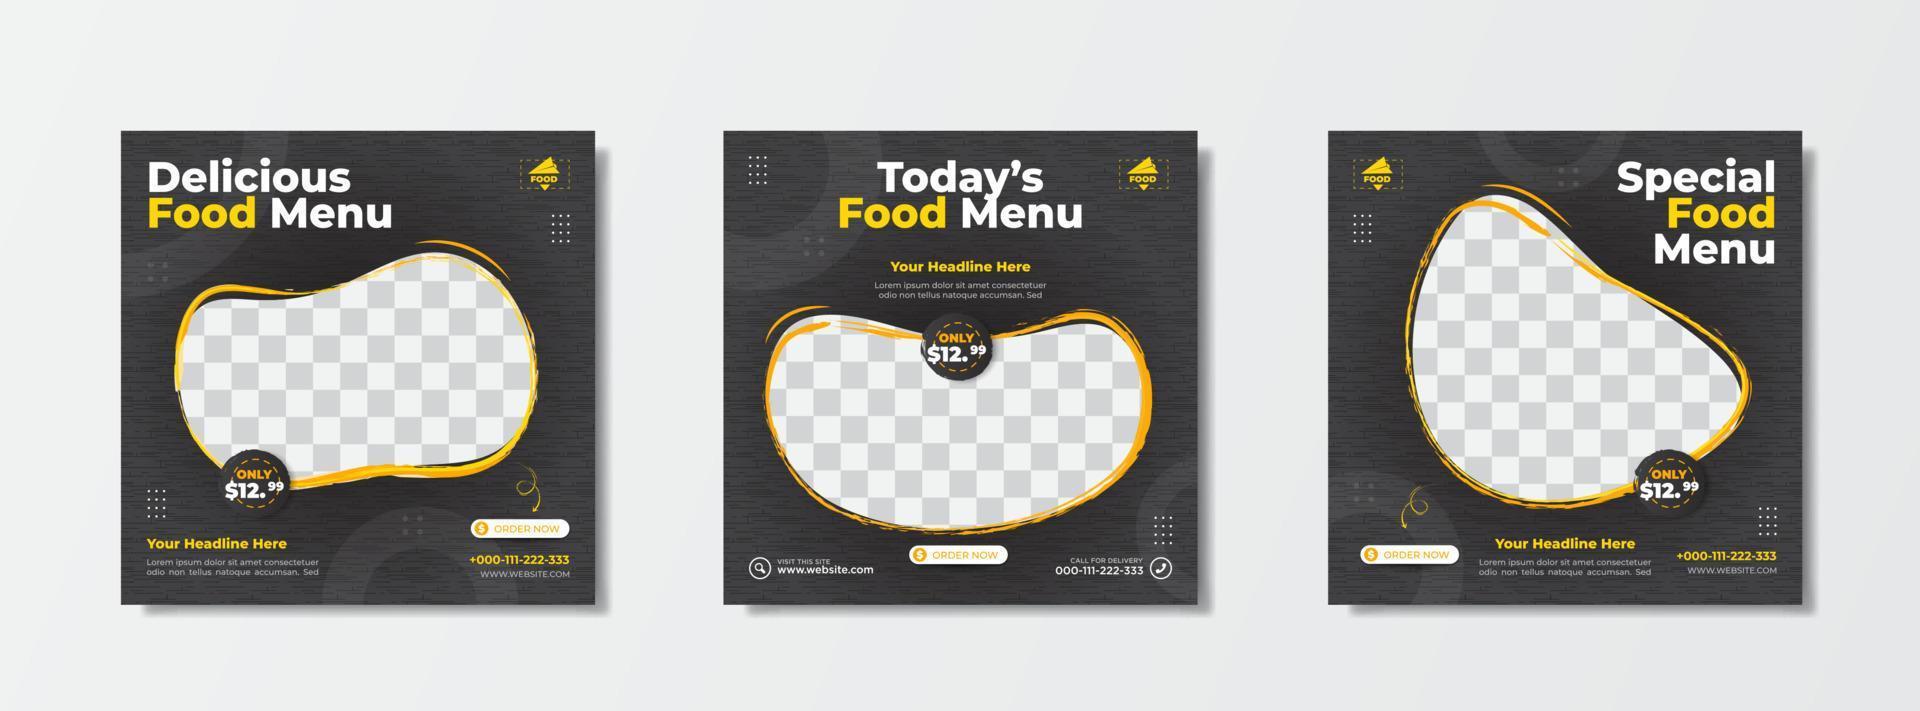 modelo de venda de promoção de menu de comida com fundo escuro para postagem de mídia social vetor